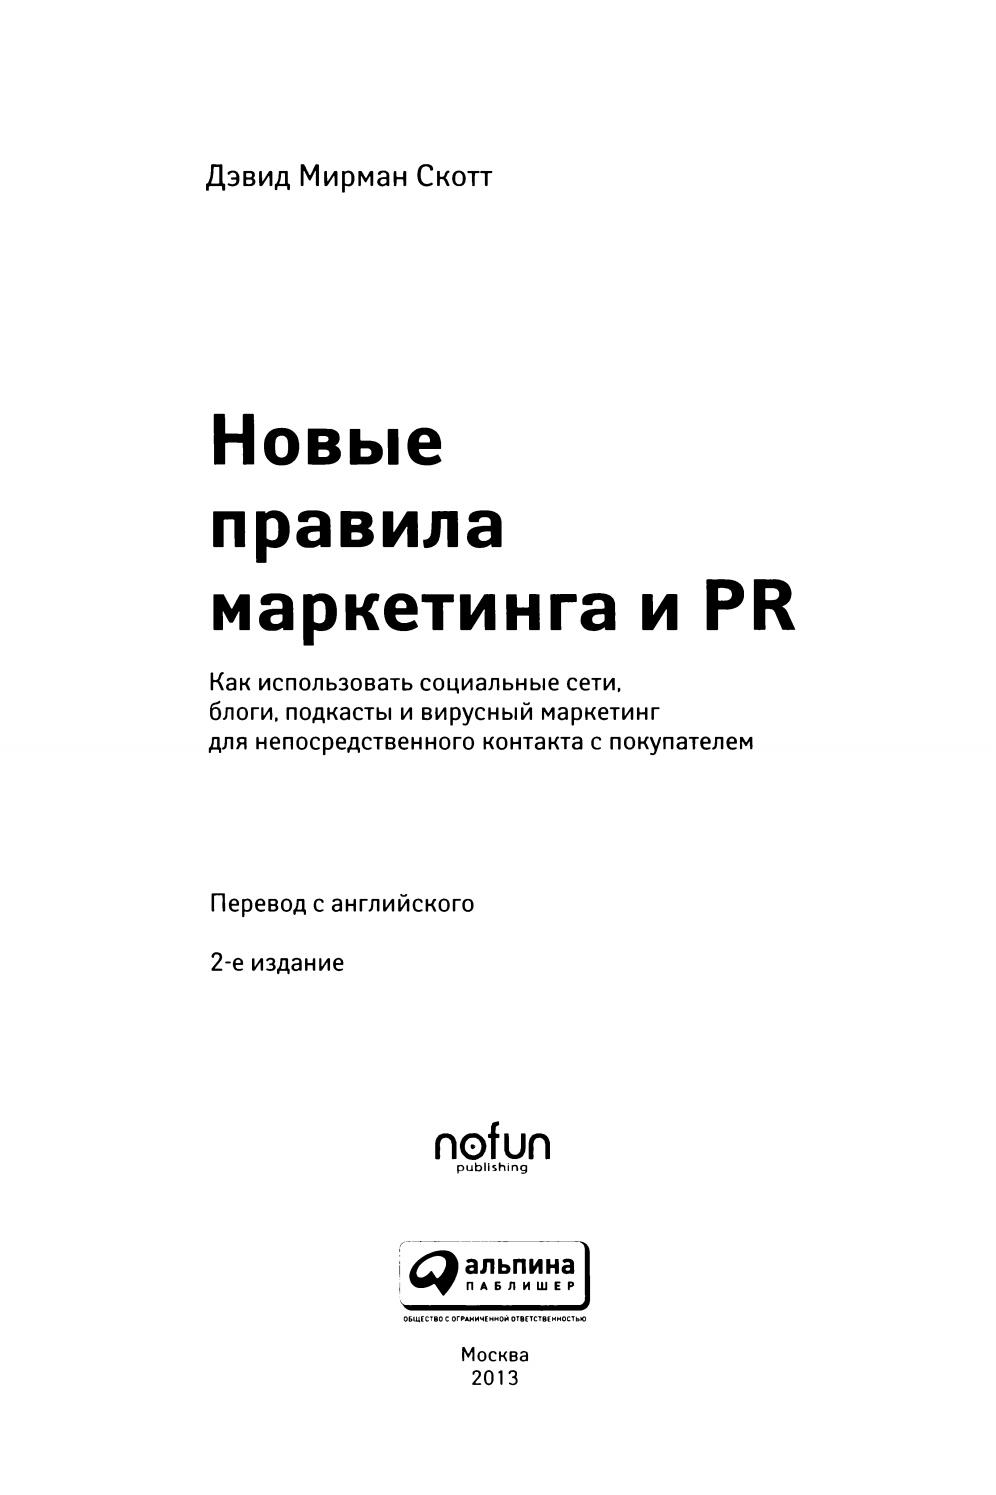 Новые правила маркетинга и PR, 2013, Дэвид Мирман